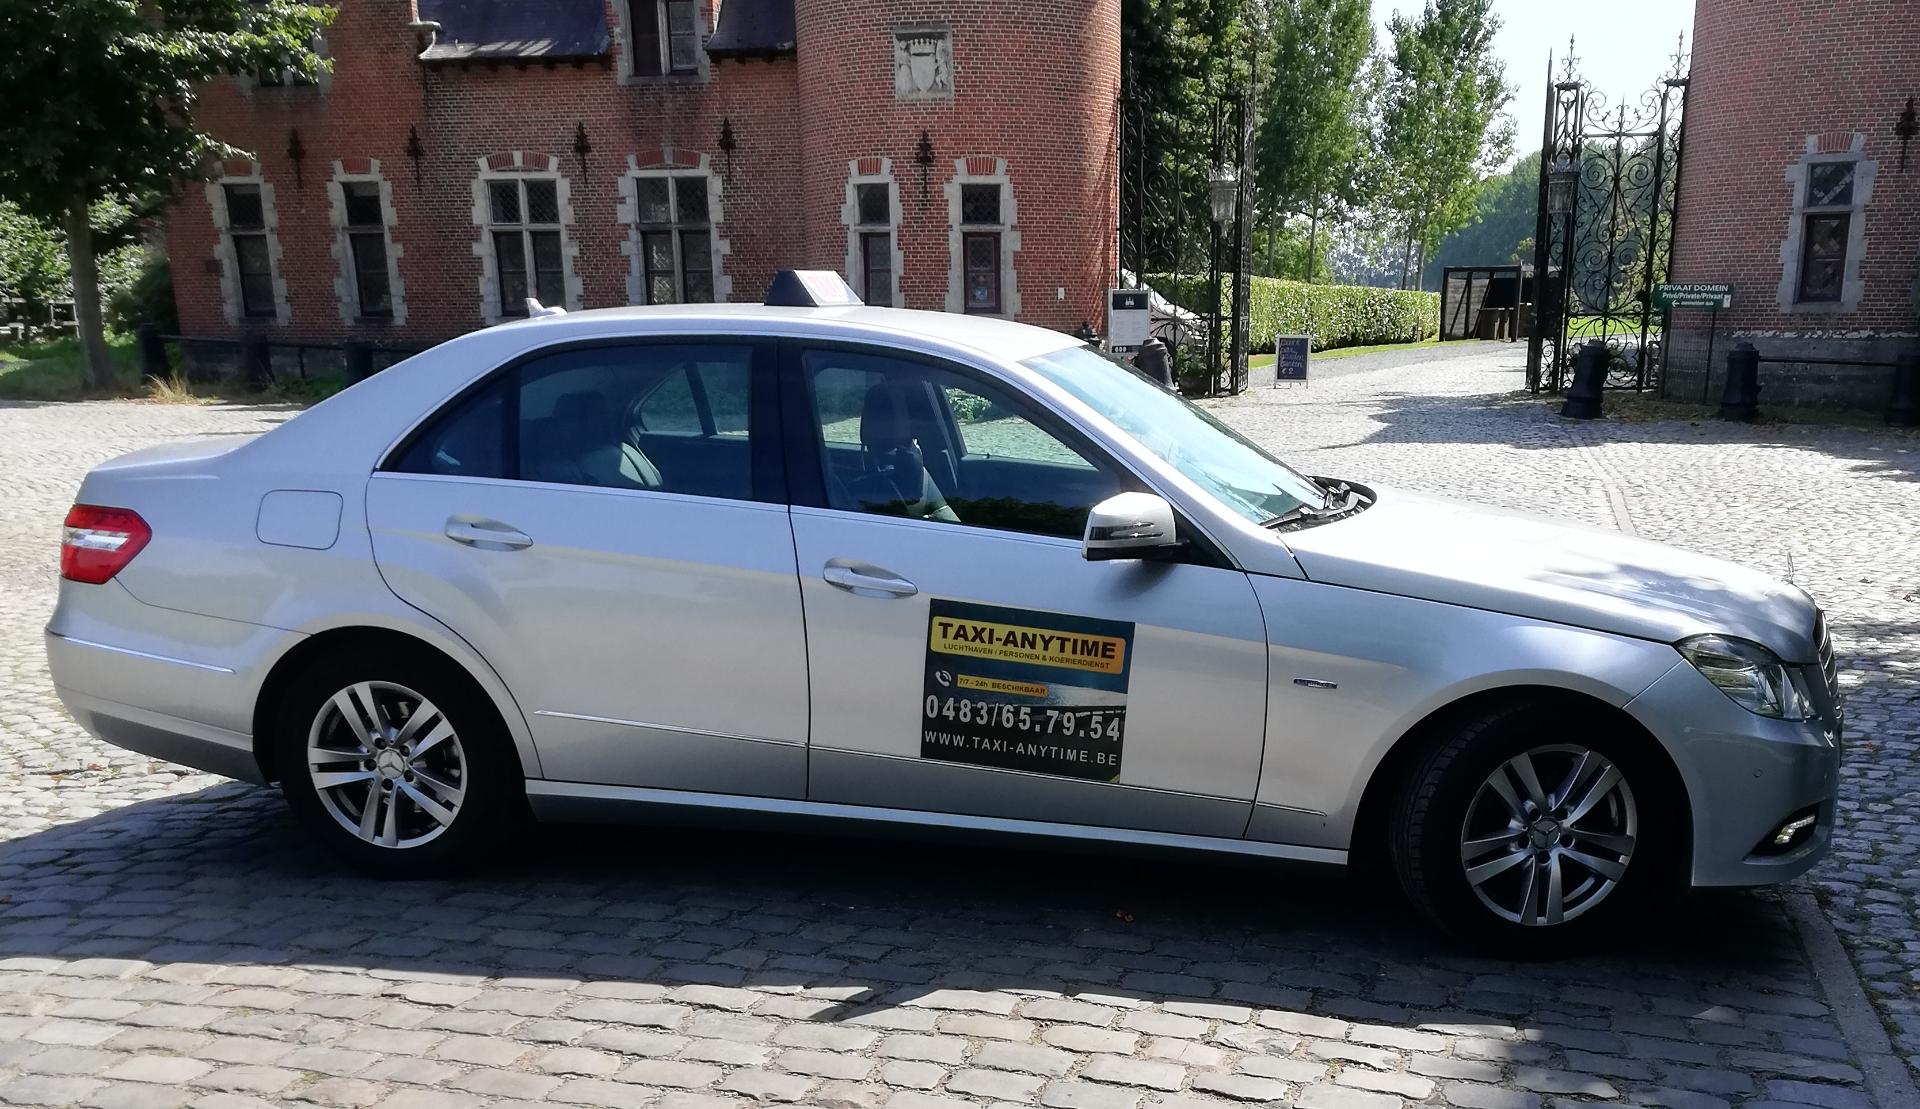 taxibedrijven Sint-Niklaas Taxi Anytime